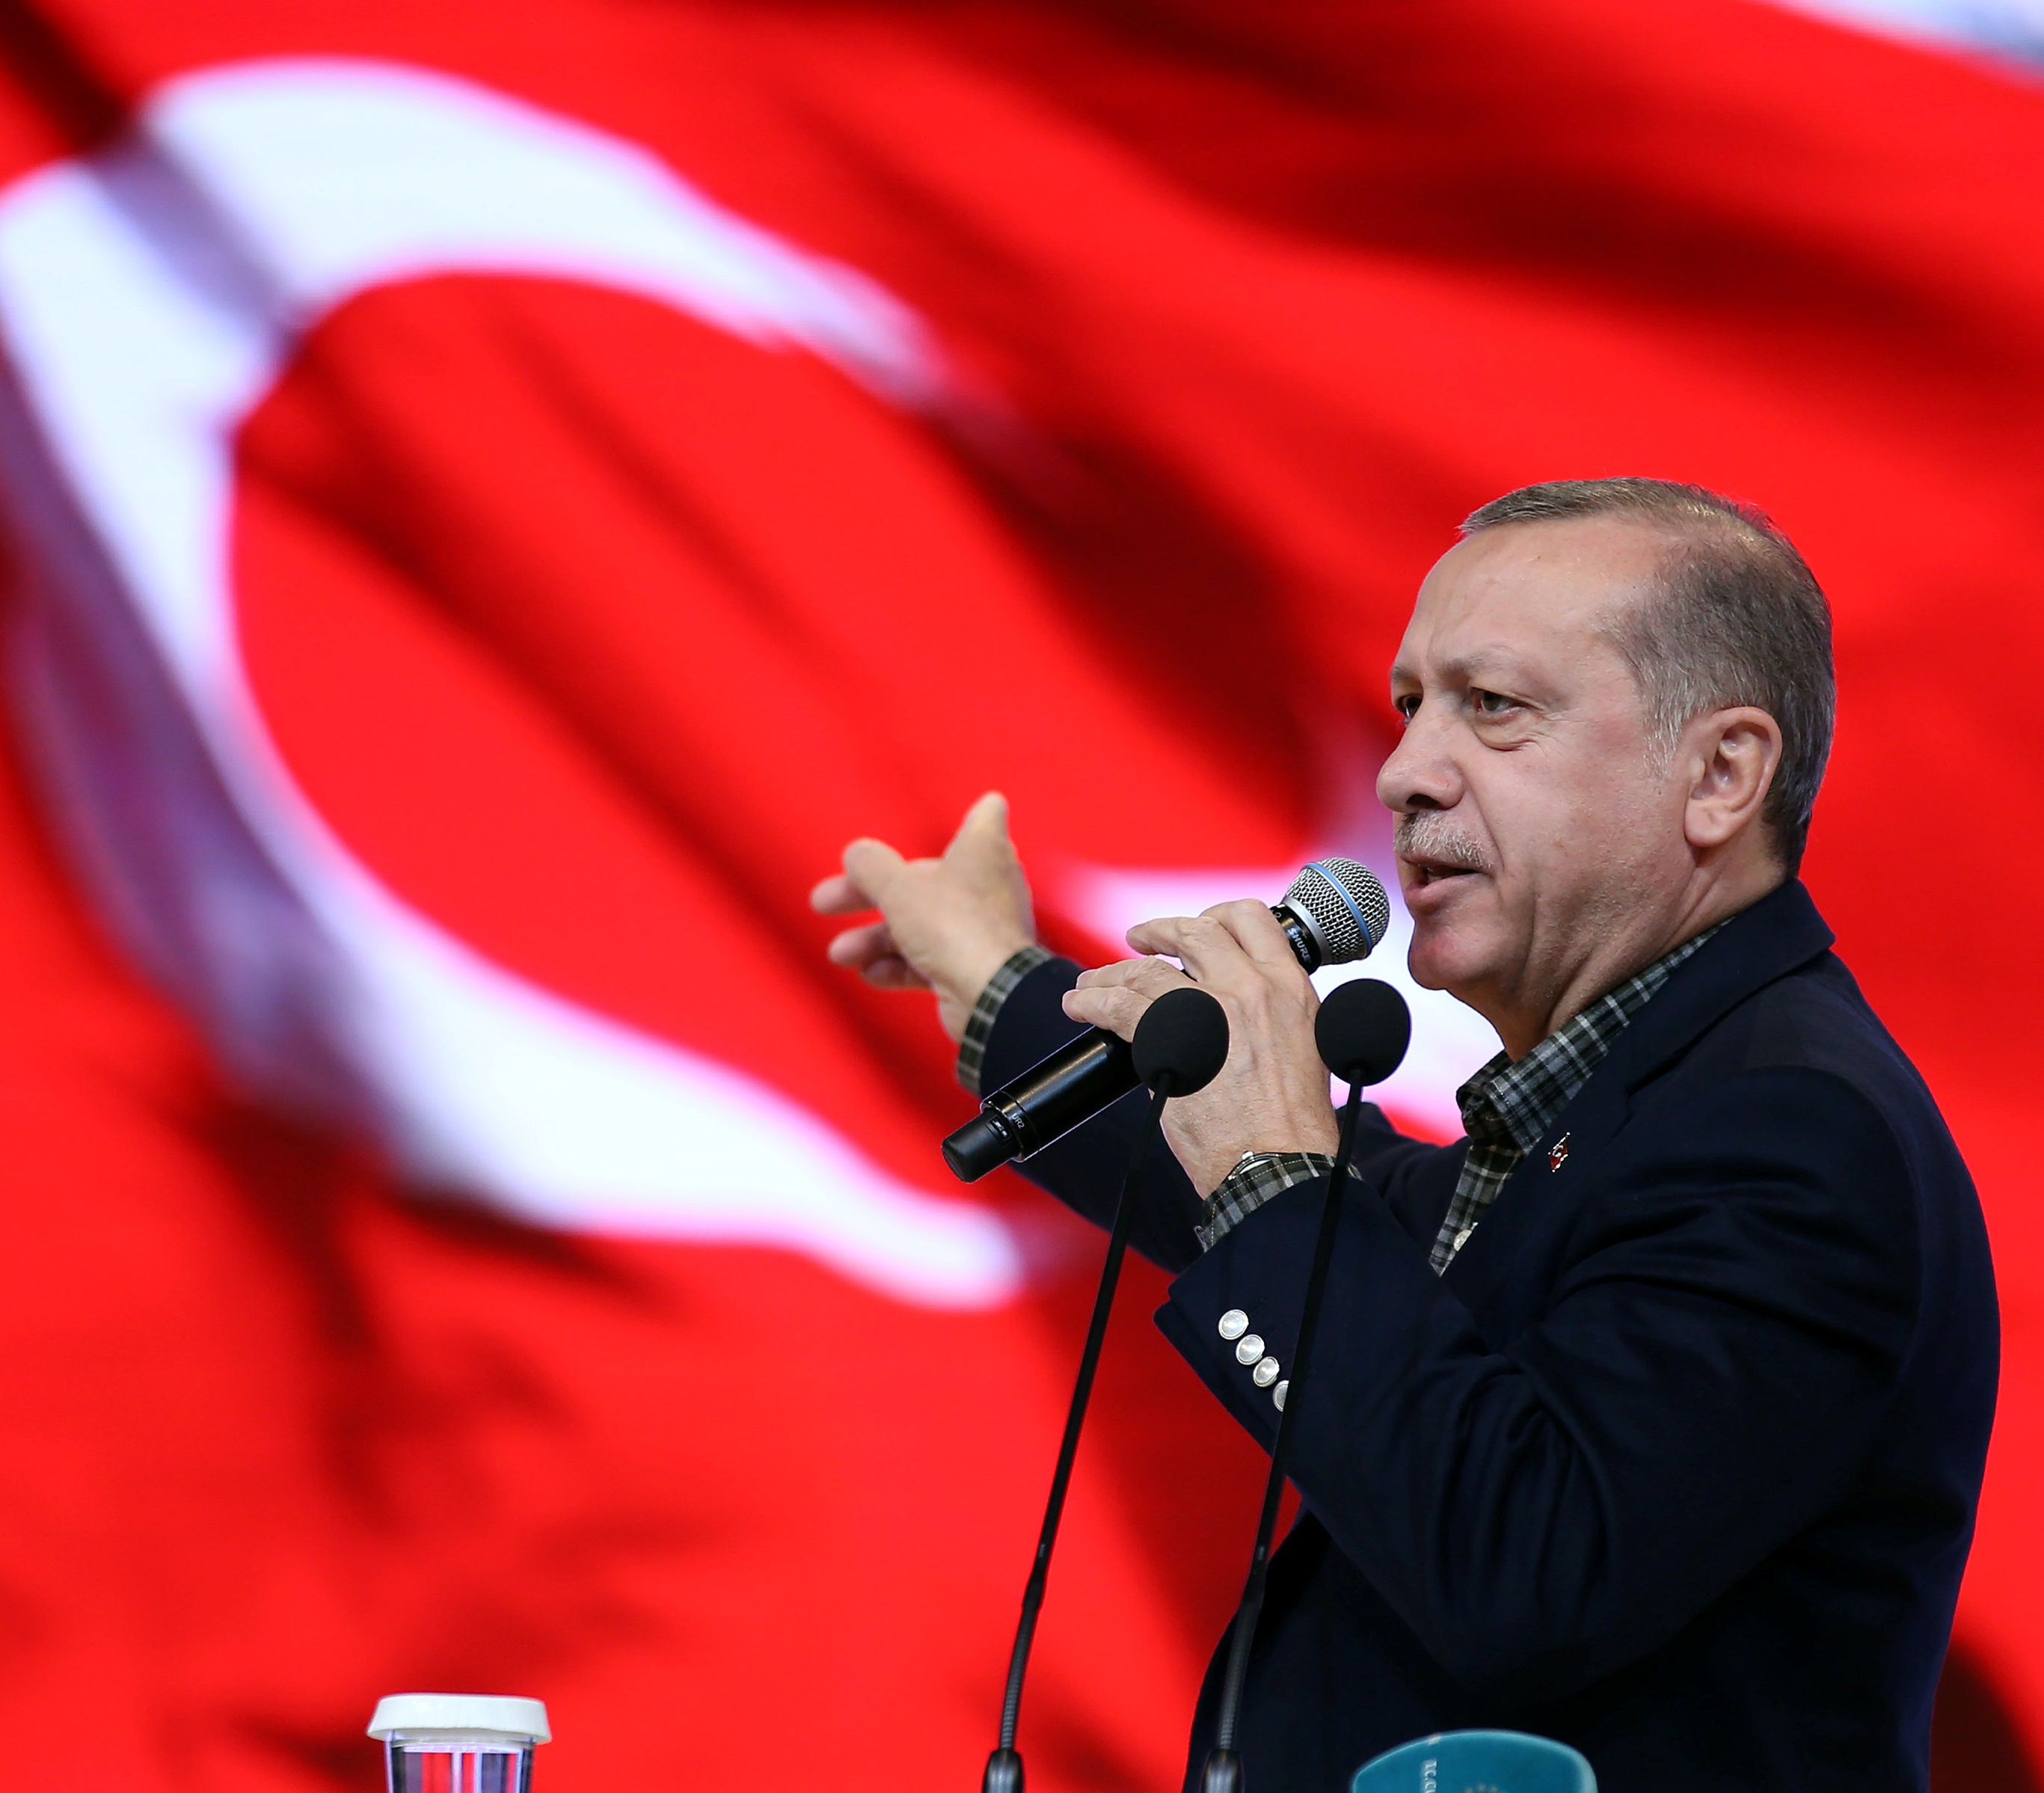 El presidente de Turquía, Tayyip Erdogan, durante un discurso en una reunión en Estambul (Reuters)